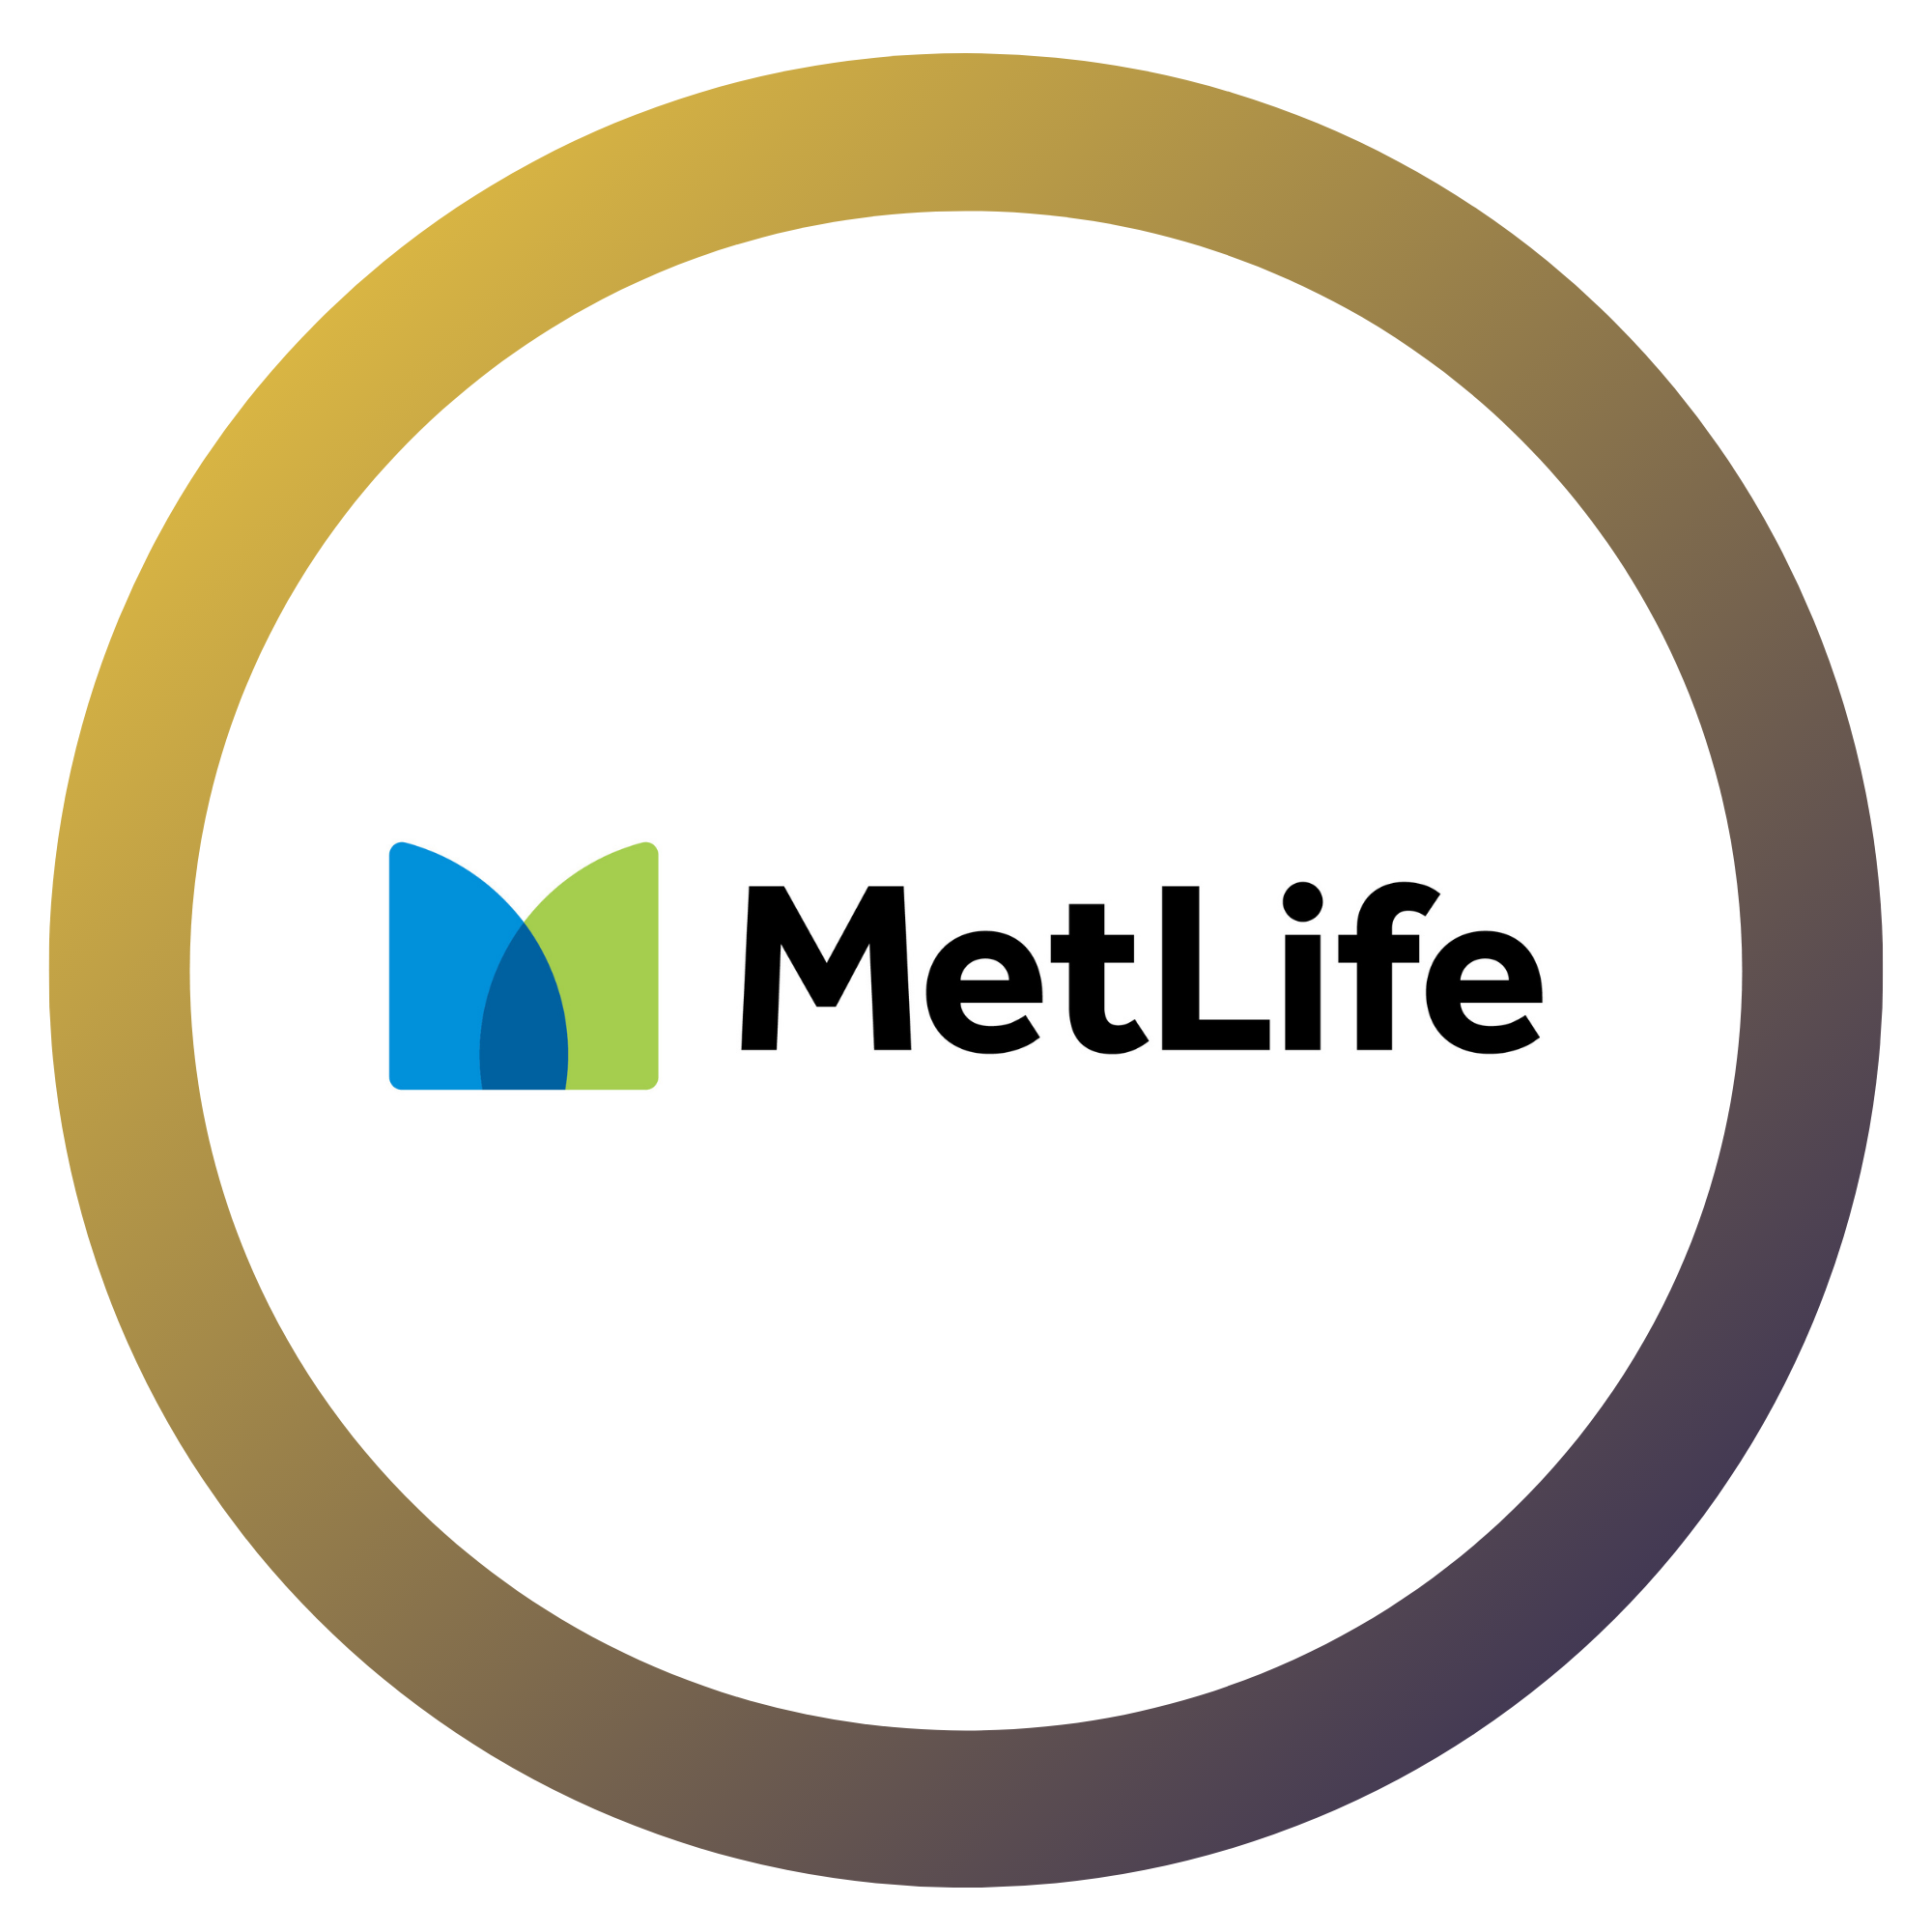 MetLife-1